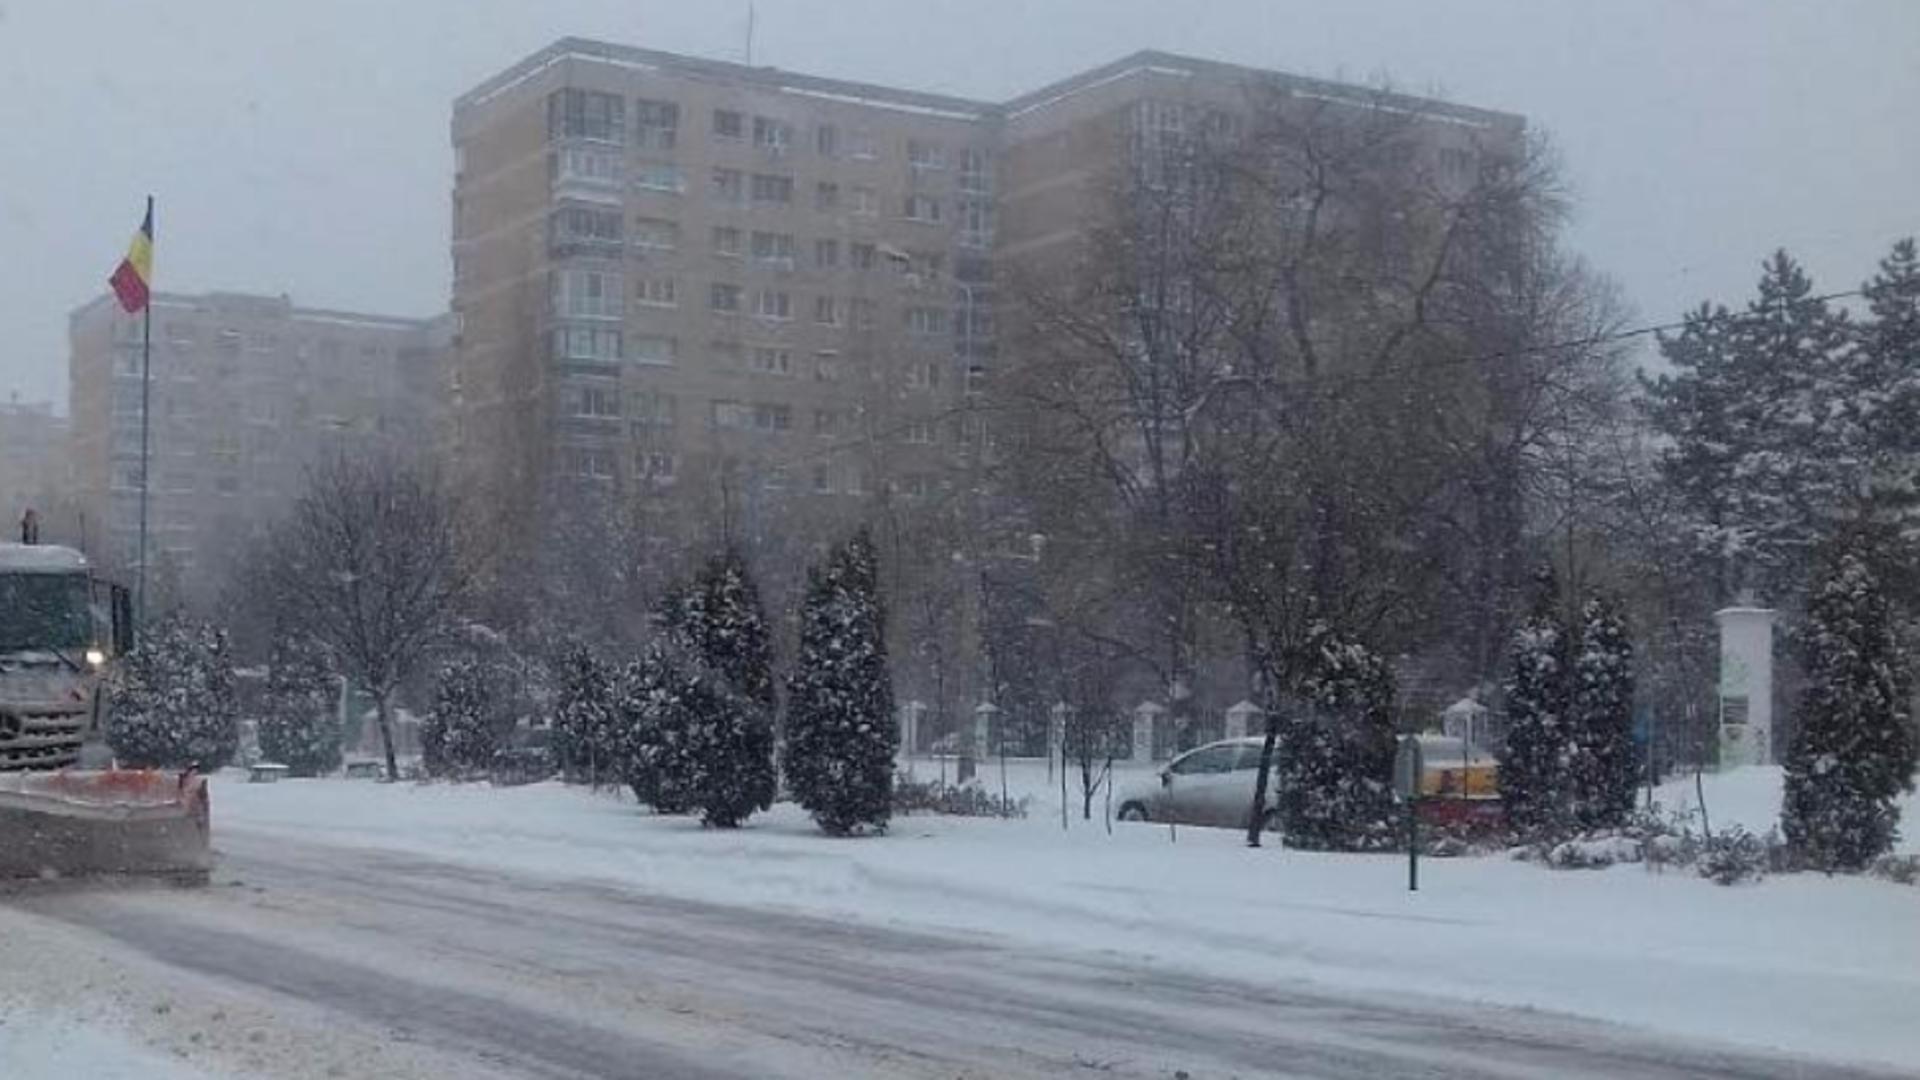 Vin ninsorile în București! Meteorologii anunță FRIG, ploi și zăpadă în următoarele zile – Prognoza specială ANM